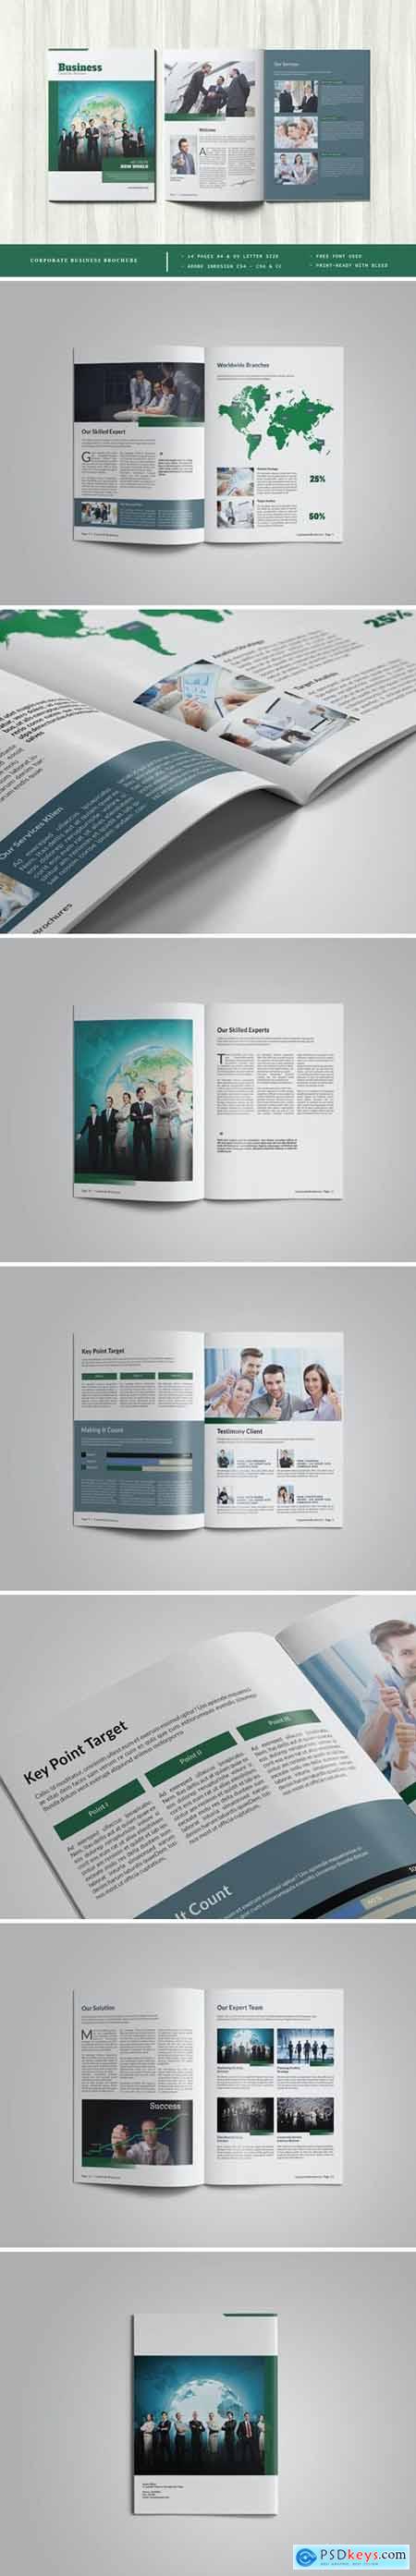 Corporate Business Brochure Template